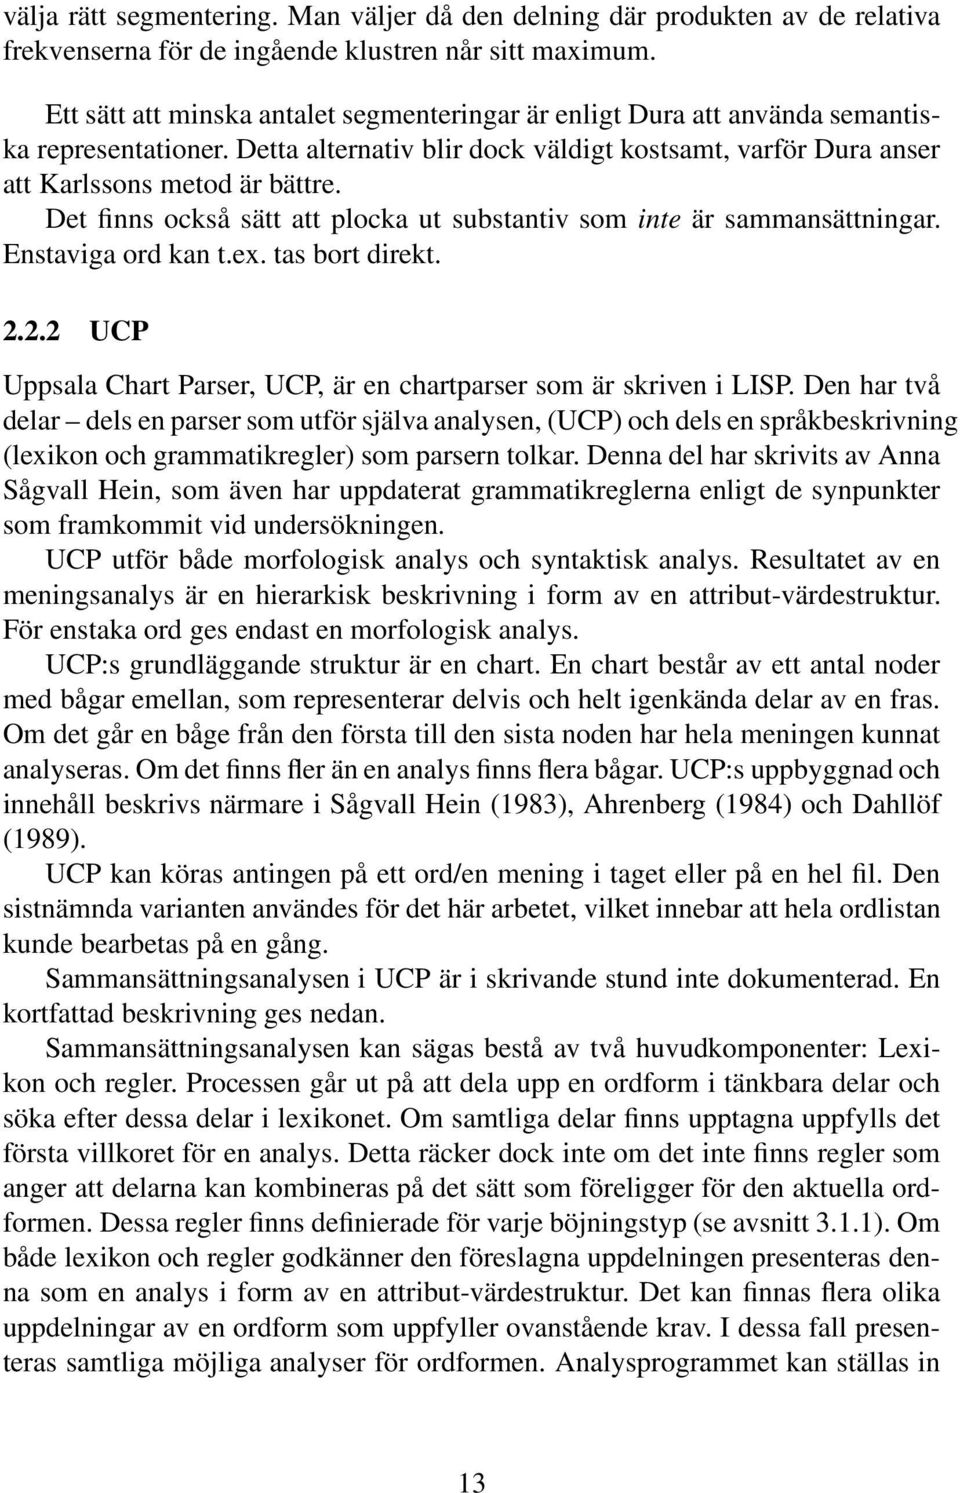 Det finns också sätt att plocka ut substantiv som inte är sammansättningar. Enstaviga ord kan t.ex. tas bort direkt. 2.2.2 UCP Uppsala Chart Parser, UCP, är en chartparser som är skriven i LISP.